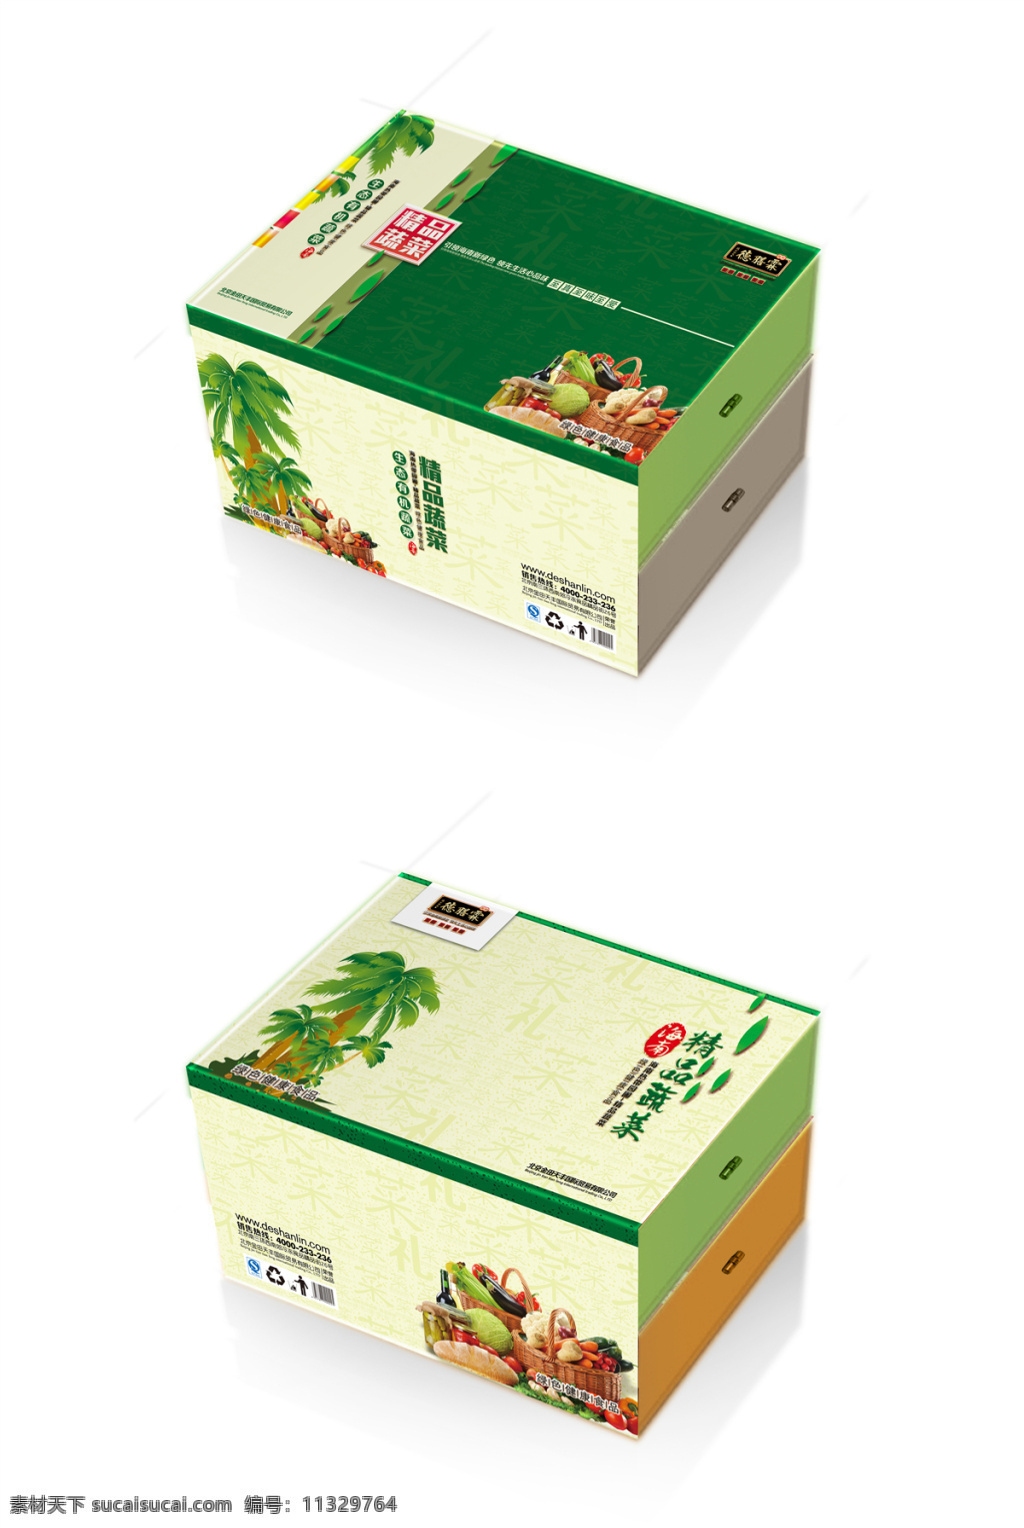 绿色果蔬包装 果蔬包装 水果包装 包装设计 包装盒 手提盒 psd素材 礼品盒 白色